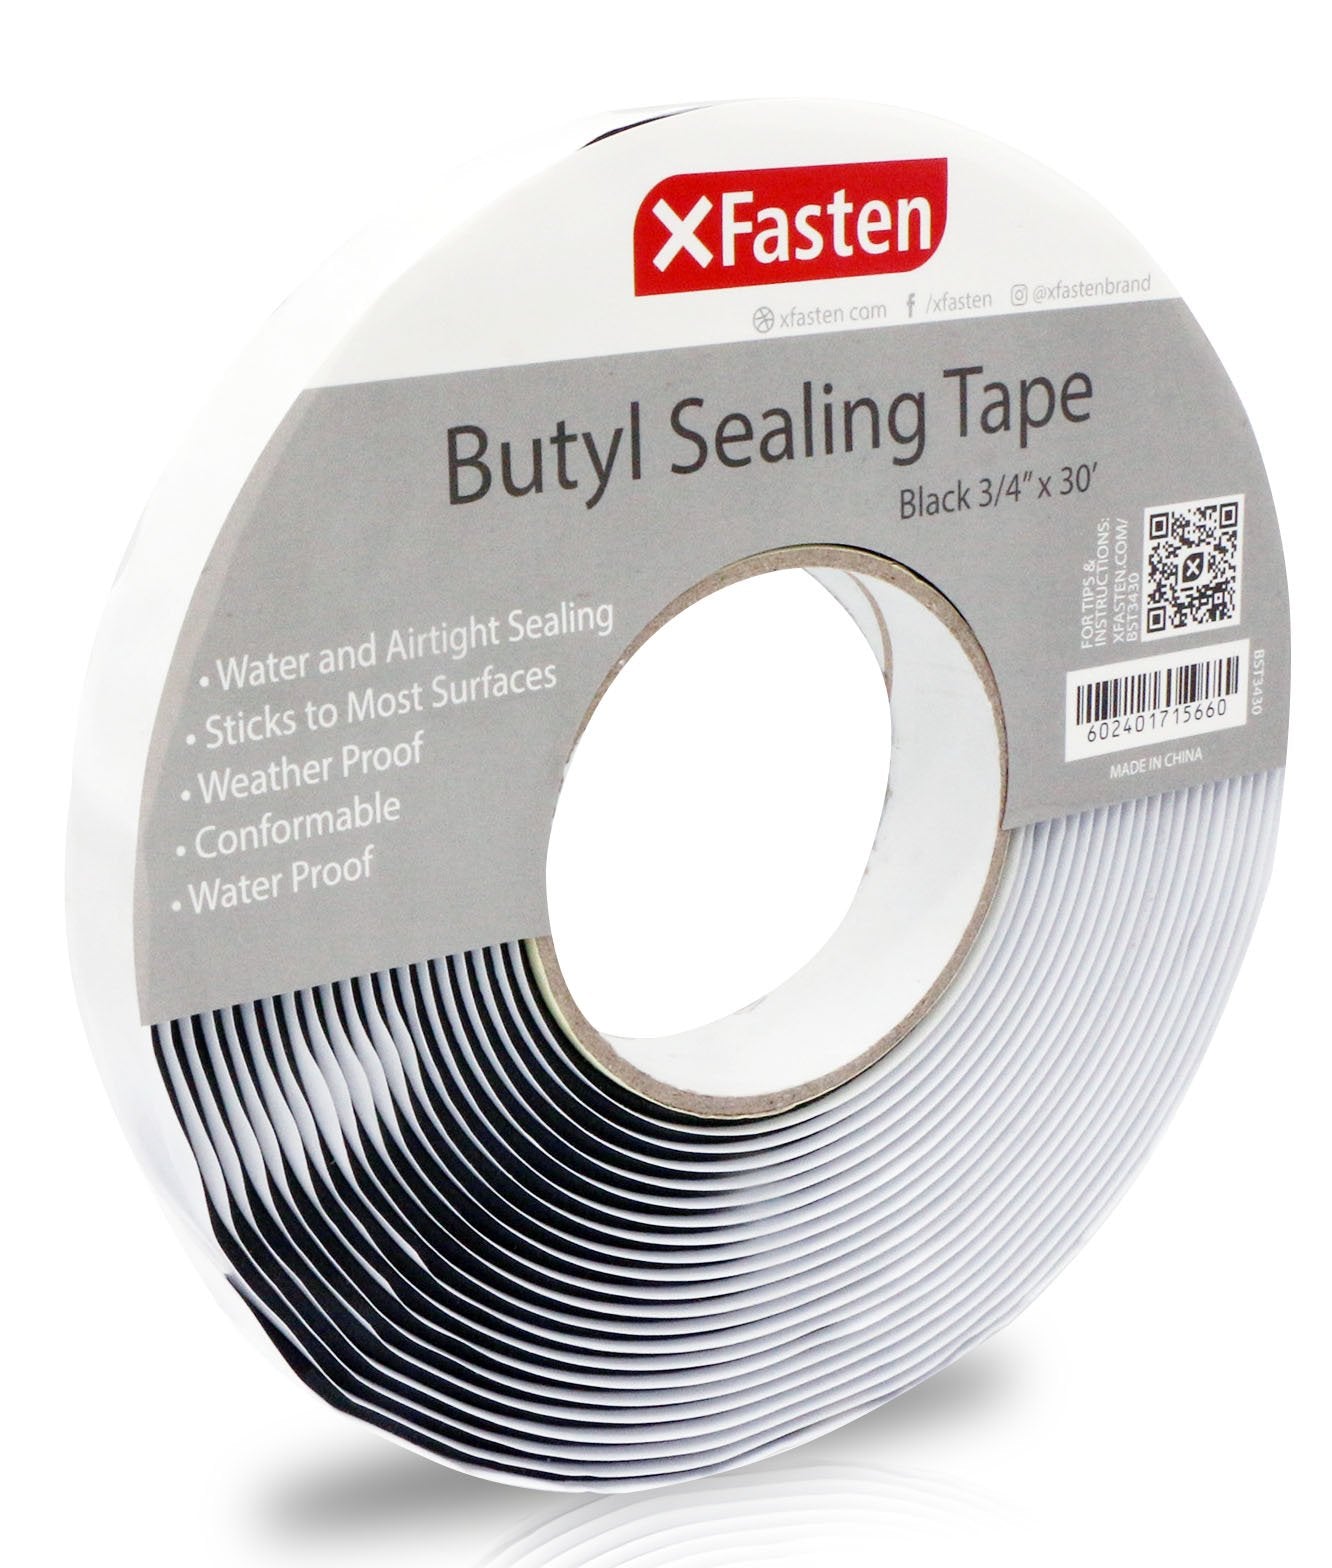 Butyl Seal Tape - XFasten